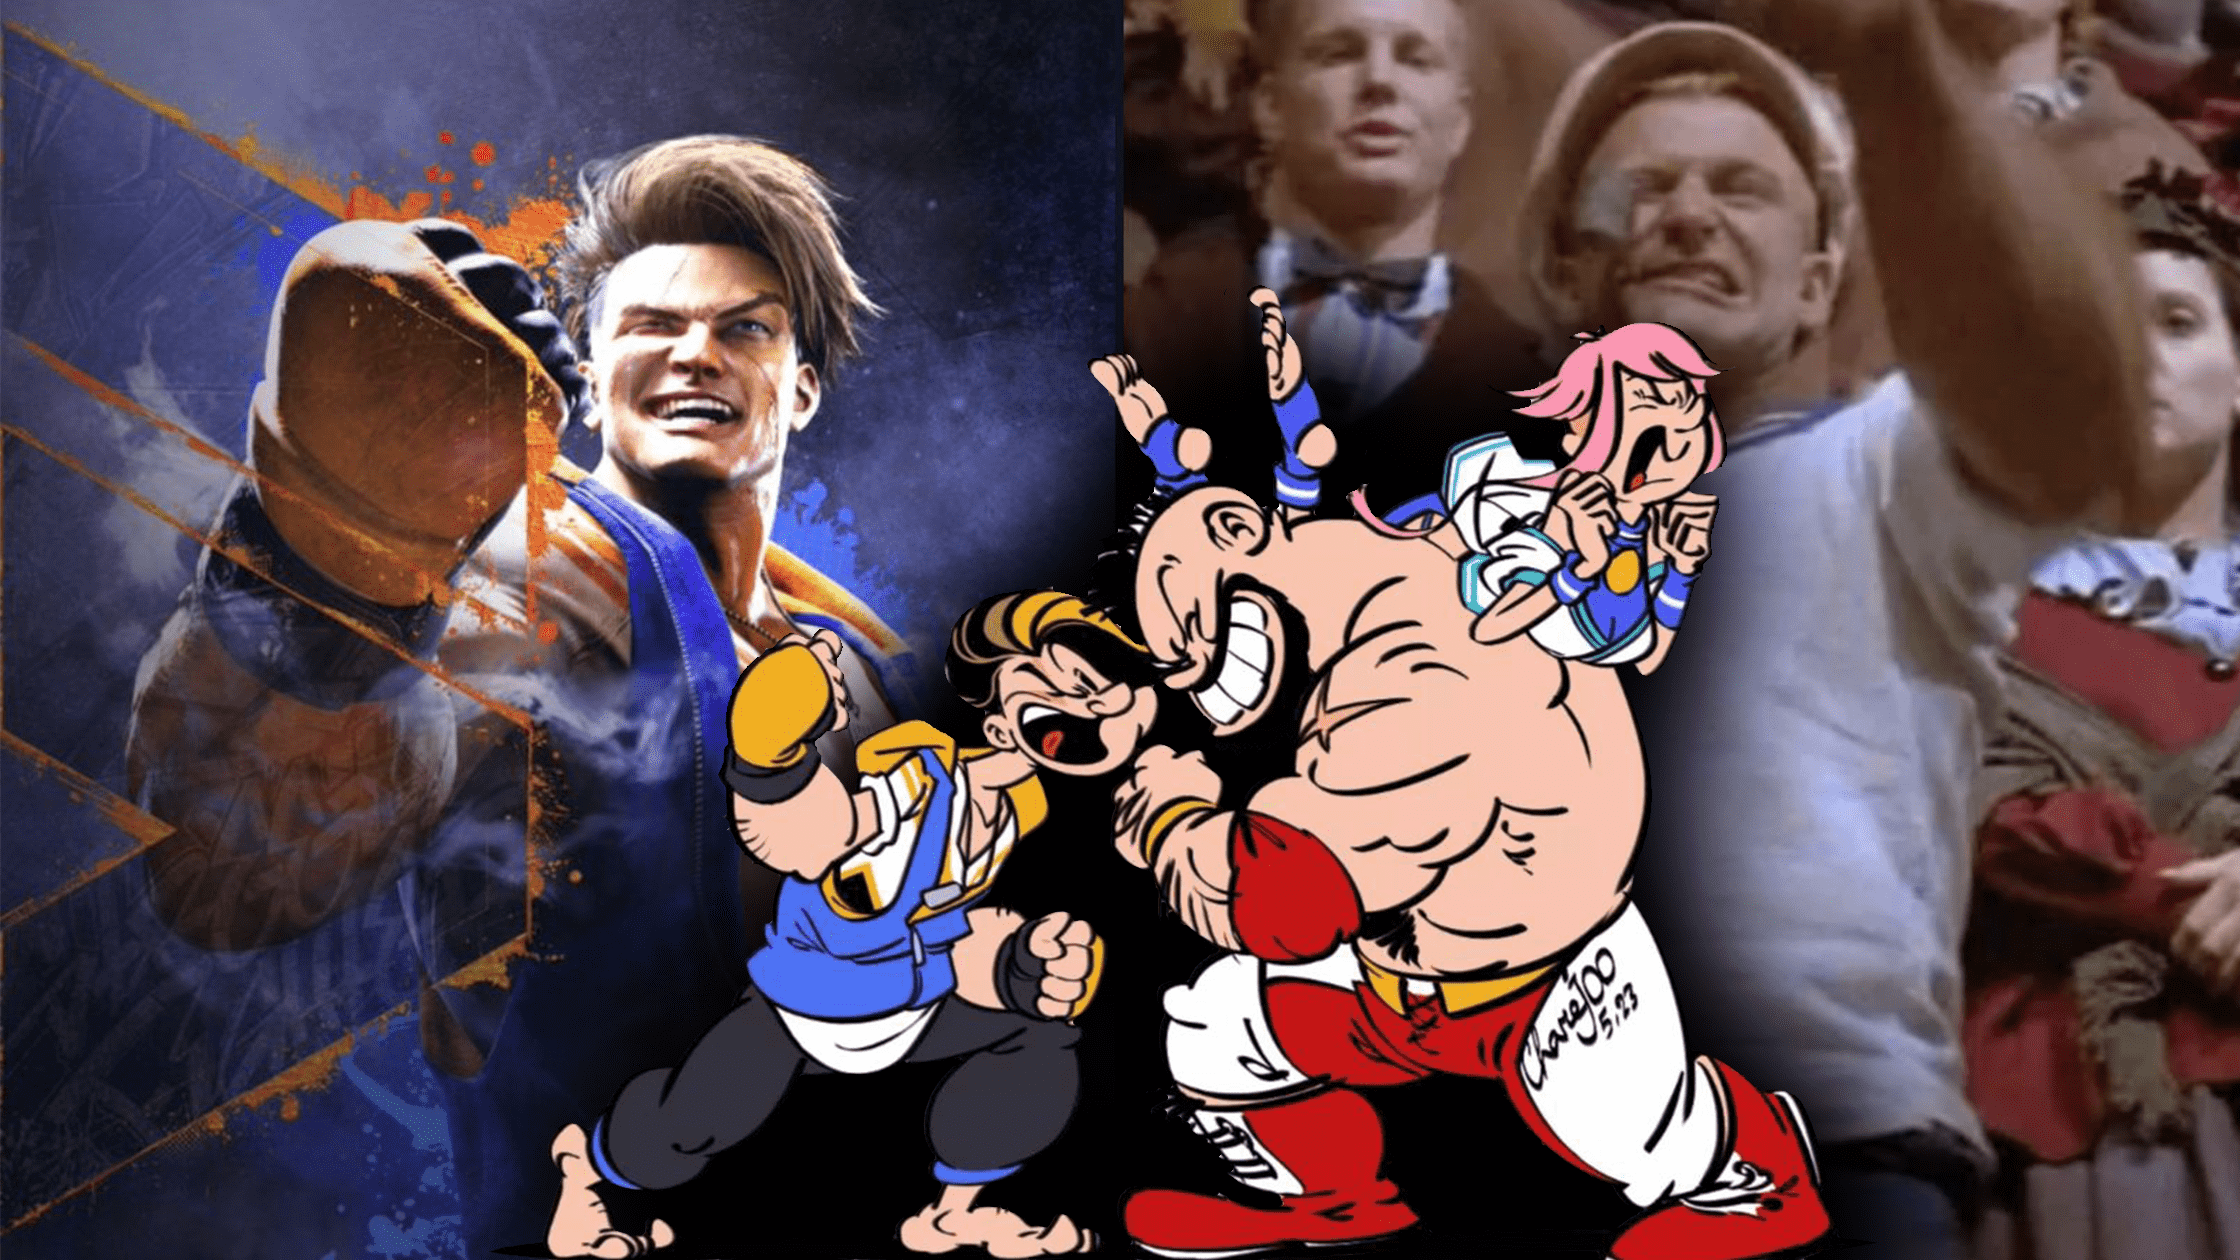 Luke di Street Fighter 6 e Braccio di Ferro a confronto con fanart di Luke Zangief e Manon in stile cartoon